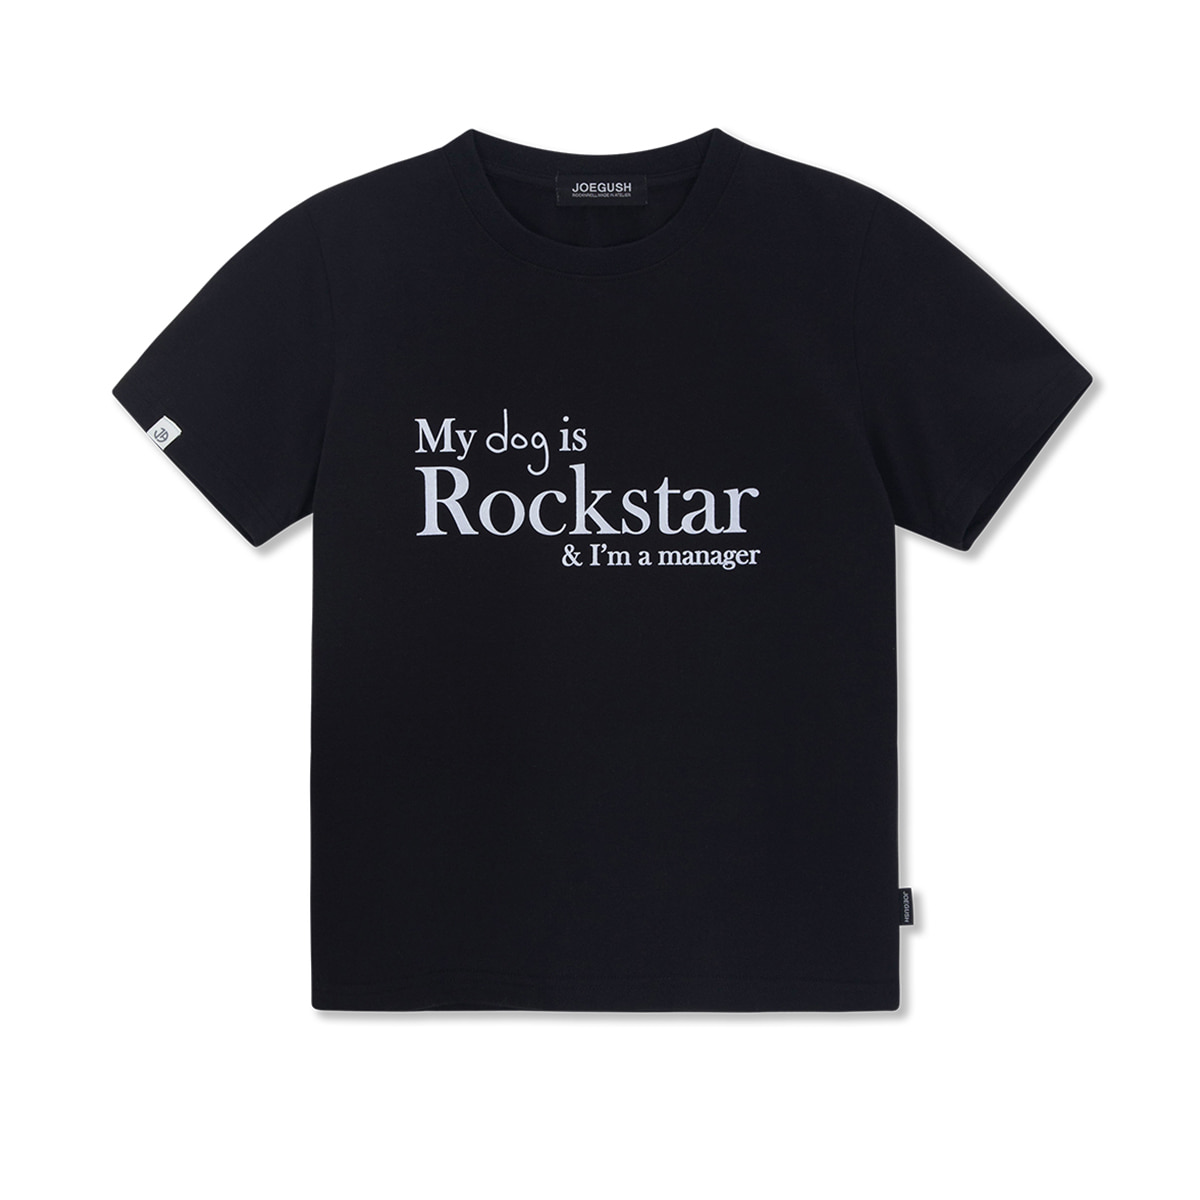 MY dog is Rockstar T-shirt (CROP VER.) (Black)